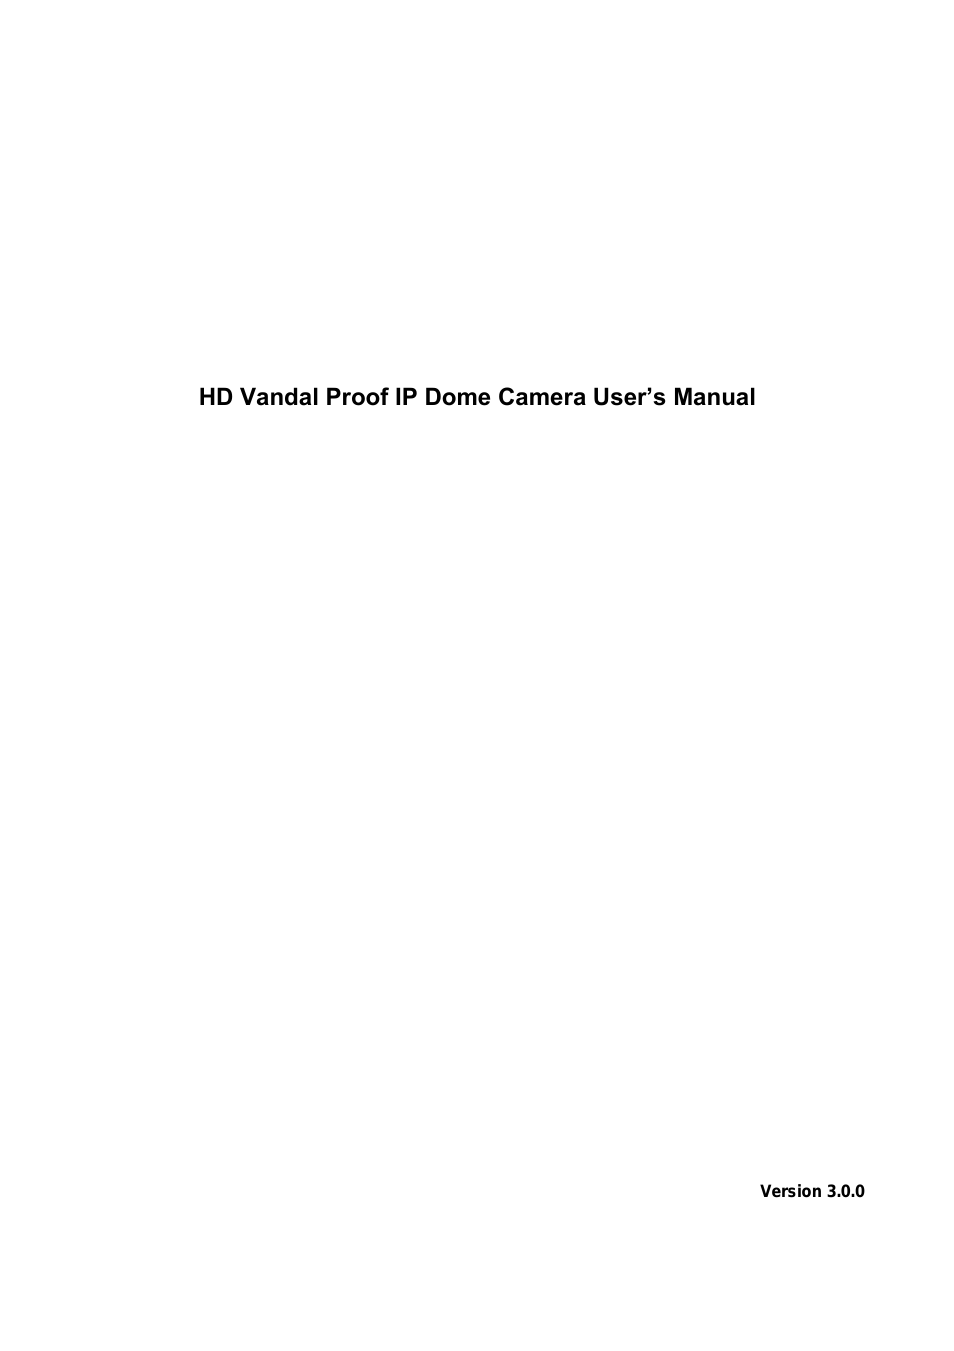 3.0 MegaPixel 3.3-12mm VF IR Vandal IP Dome with SD & POE (ICIP3000DVIR)